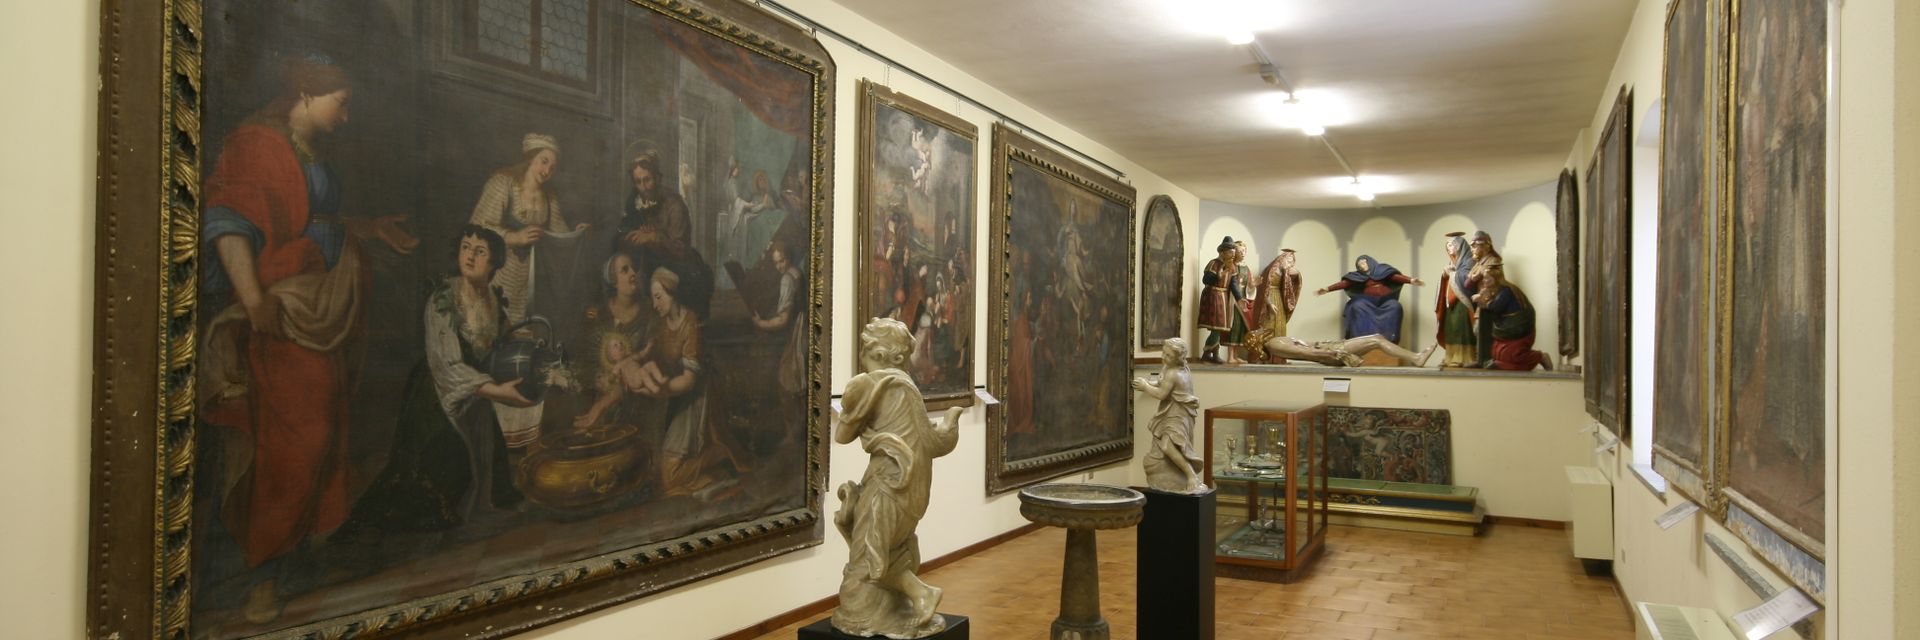 Musée paroissial d'art sacré d'Ornavasso